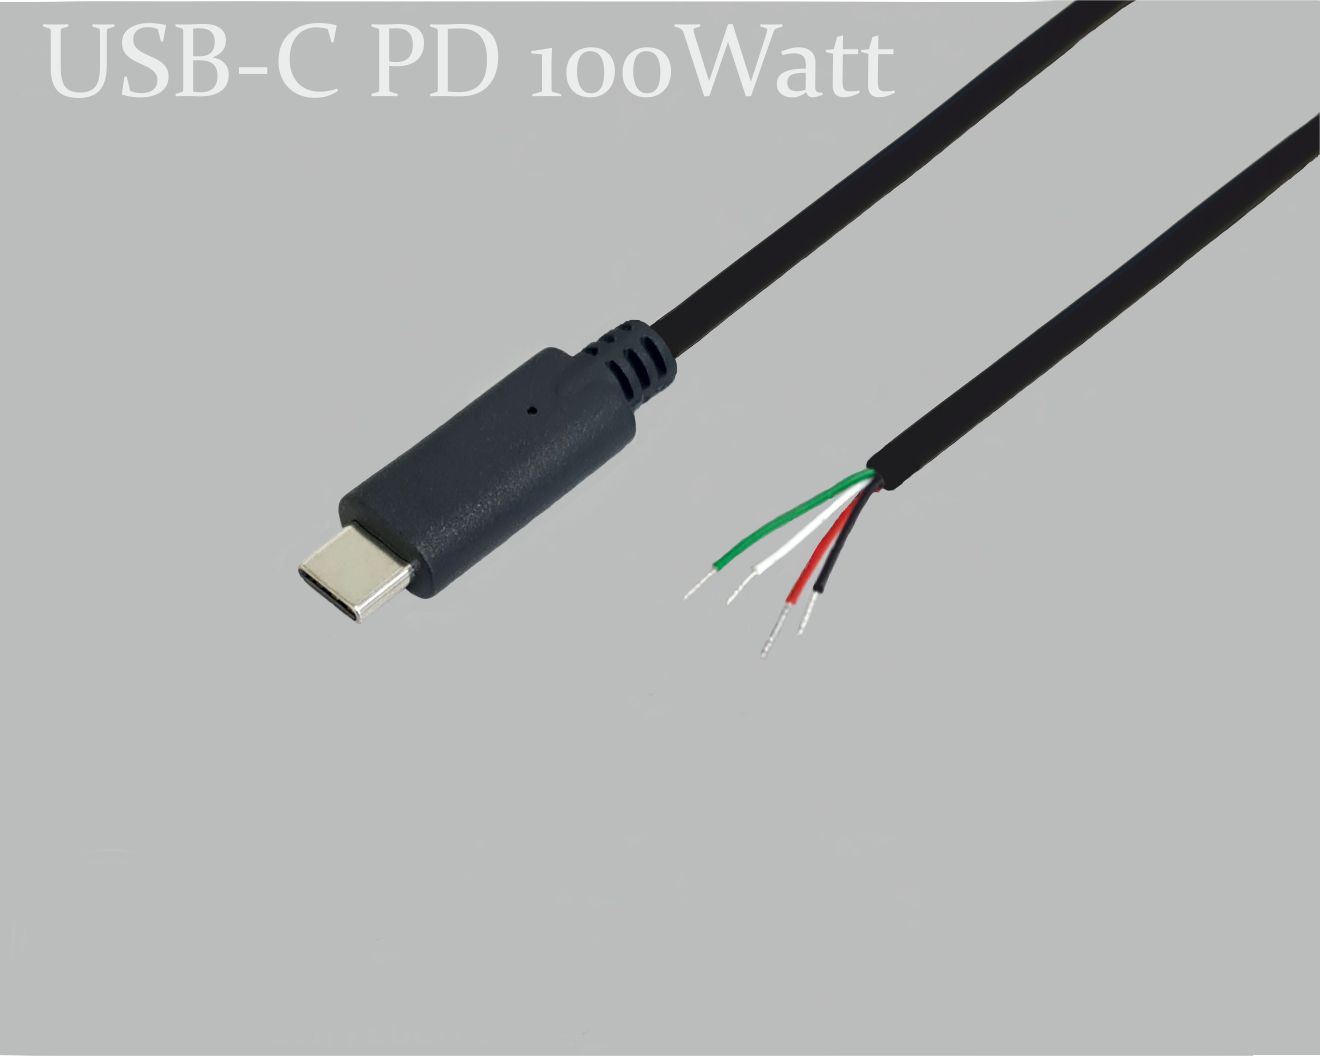 USB-C Anschlusskabel, PD Power Delivery 100W(5A/20V) mit E-Mark Chip zum schnell laden, USB-C-Stecker gerade auf offenes Ende, 0,2m, schwarz, abgemantelt und verzinnt